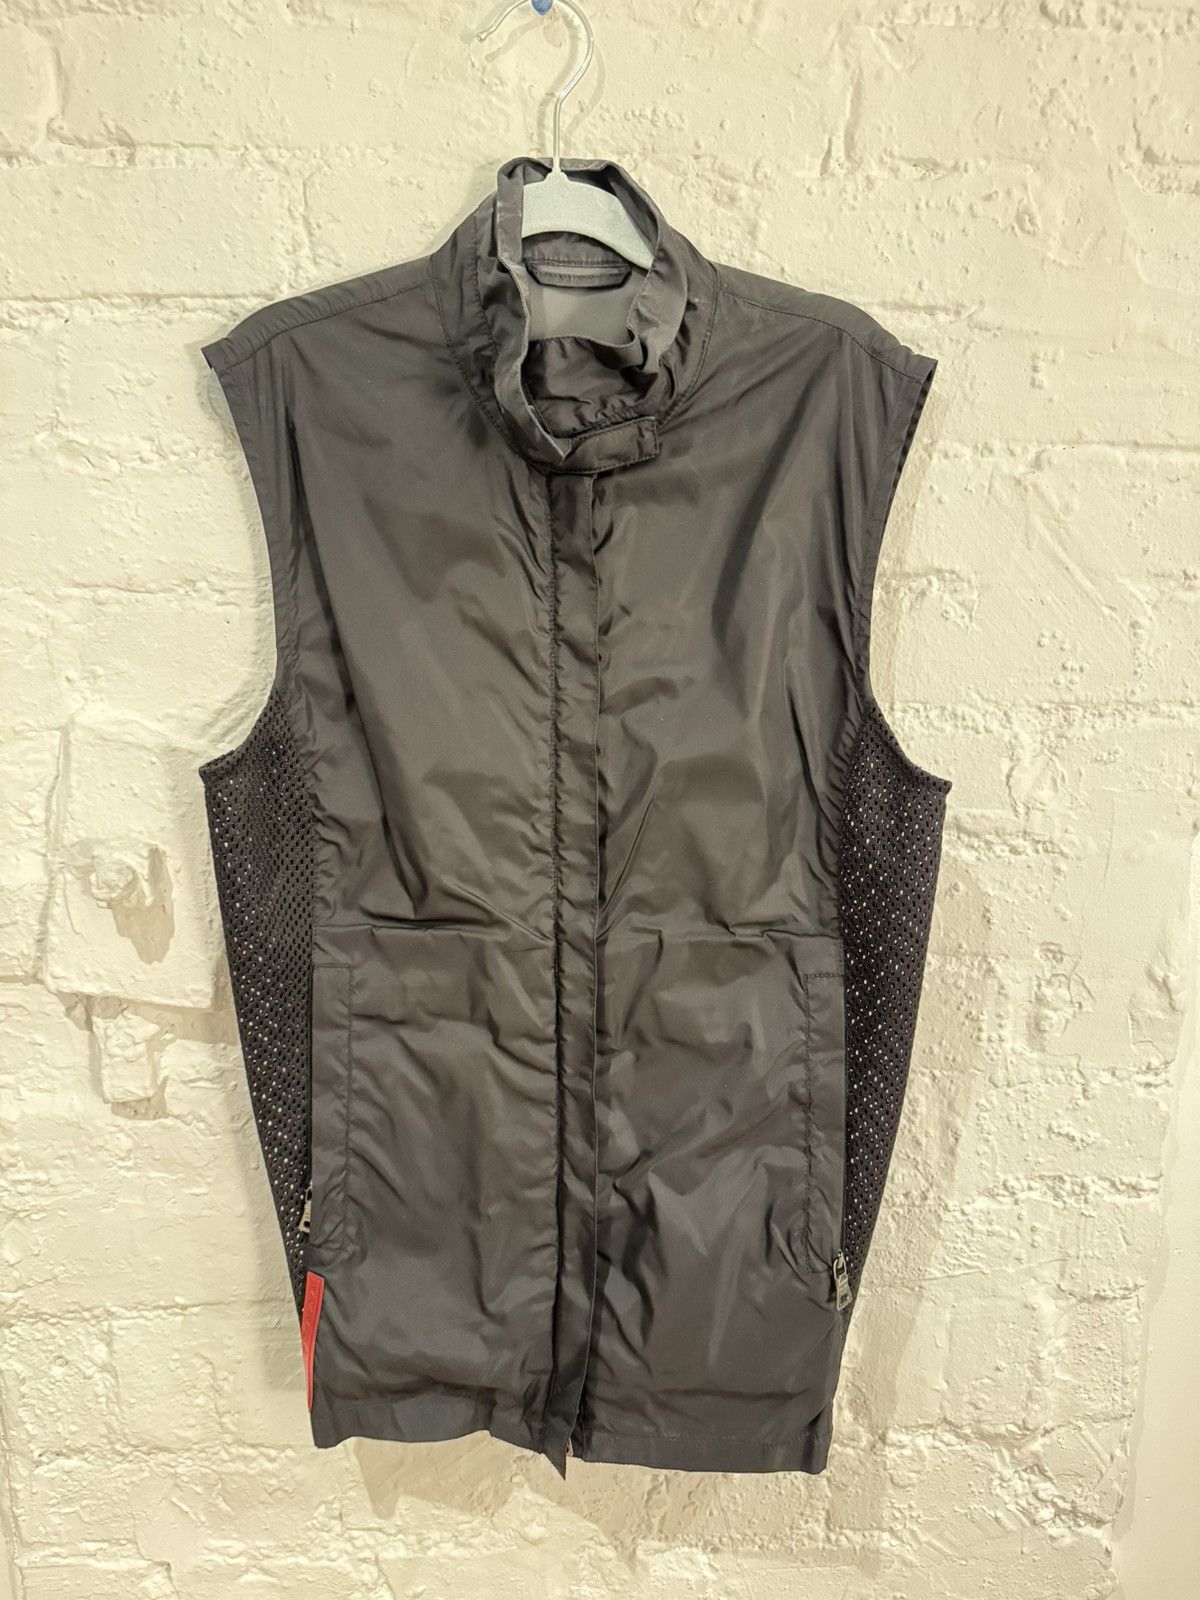 Prada Prada sport 90s nylon vest | Grailed